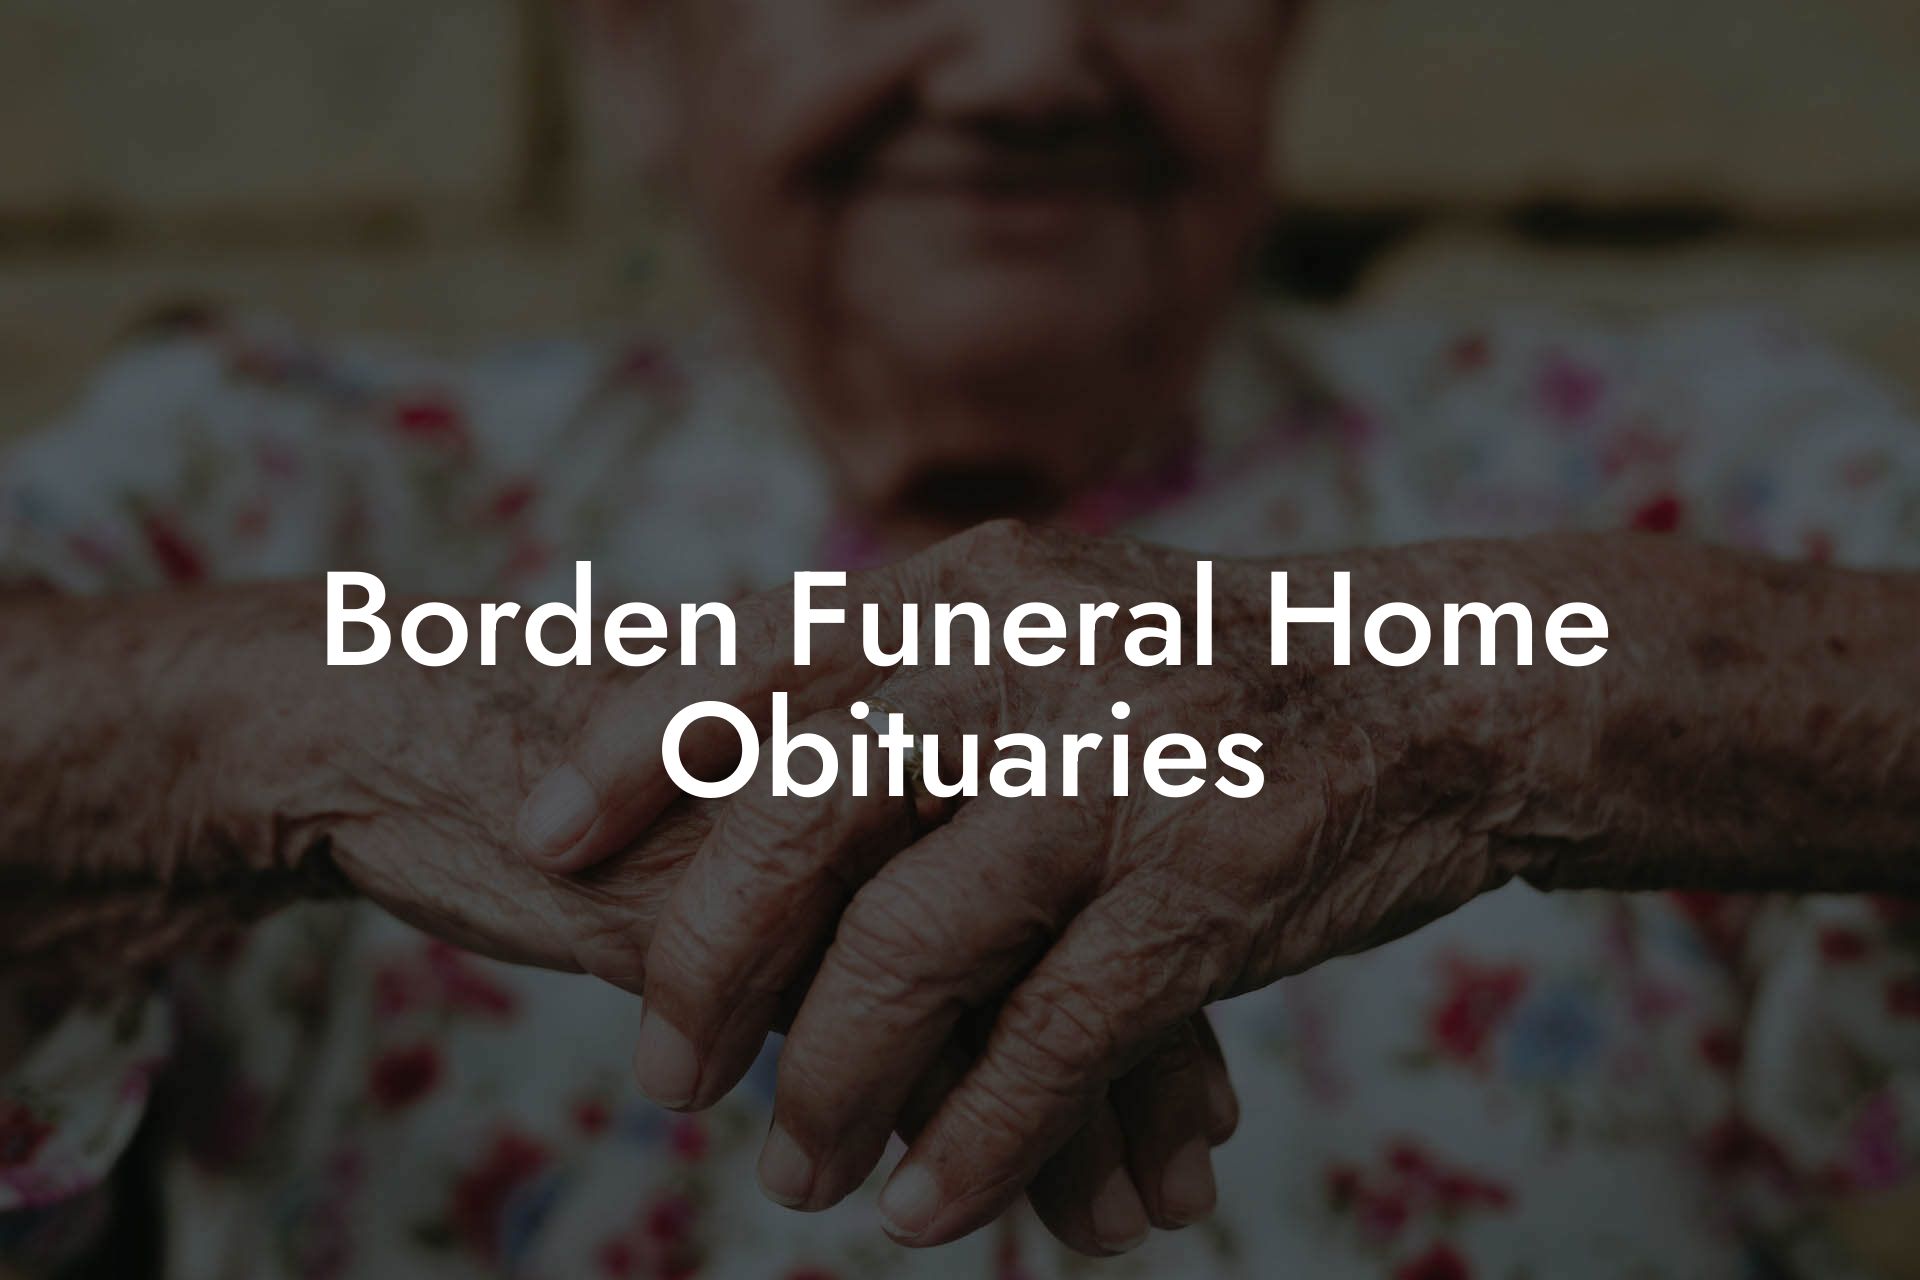 Borden Funeral Home Obituaries